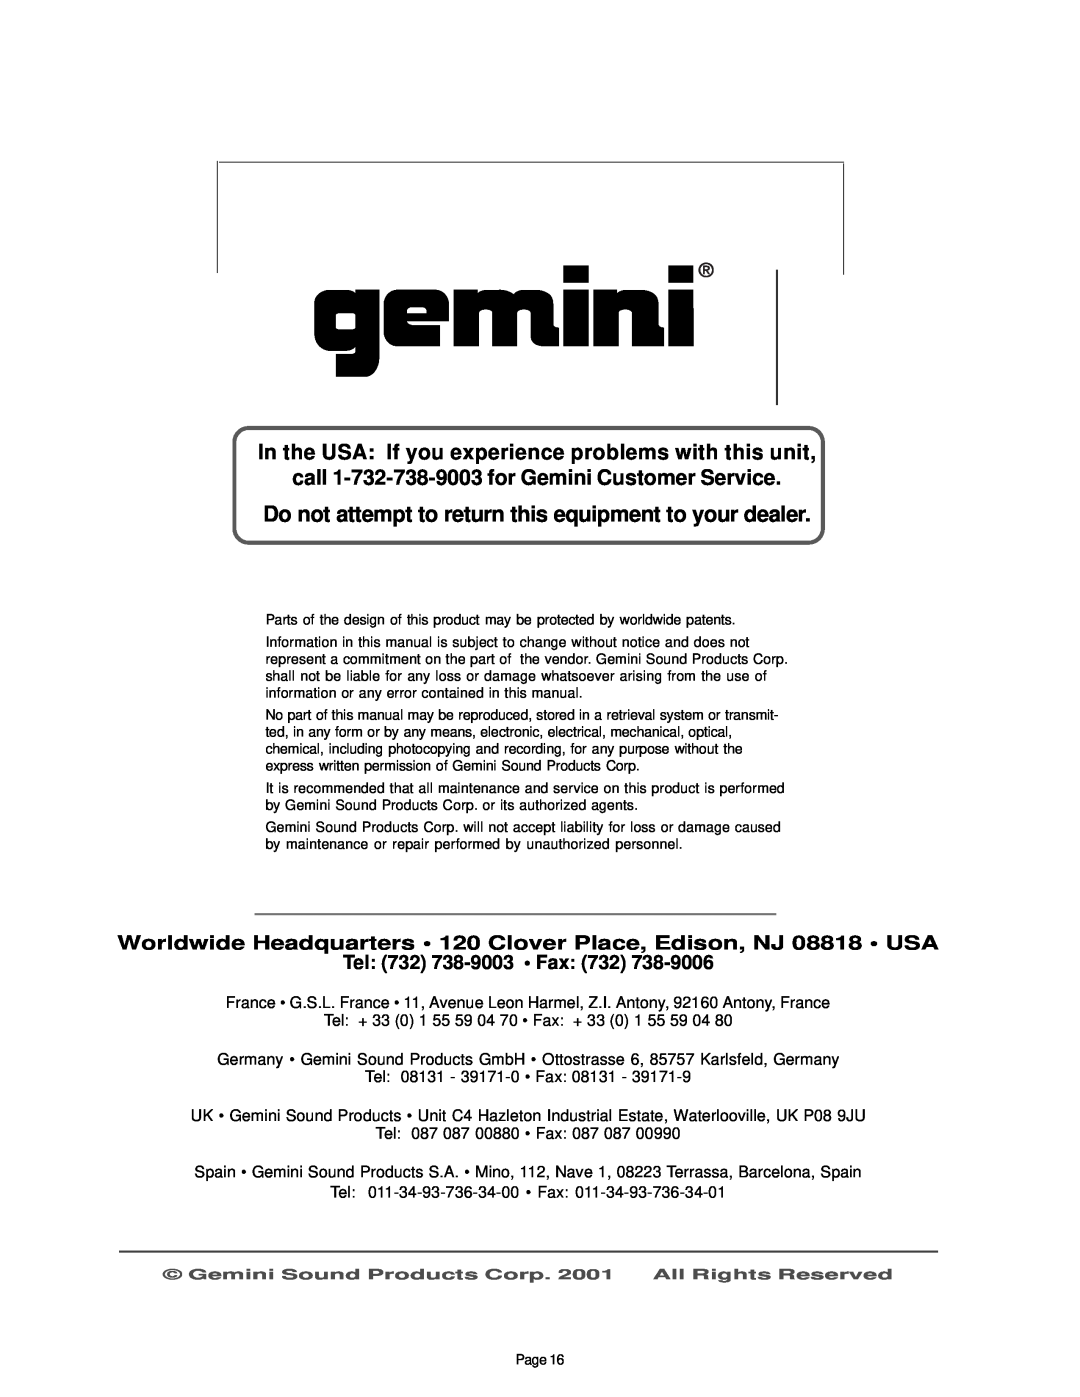 Gemini XL-100 manual call 1-732-738-9003for Gemini Customer Service, Tel 732 738-9003 Fax 